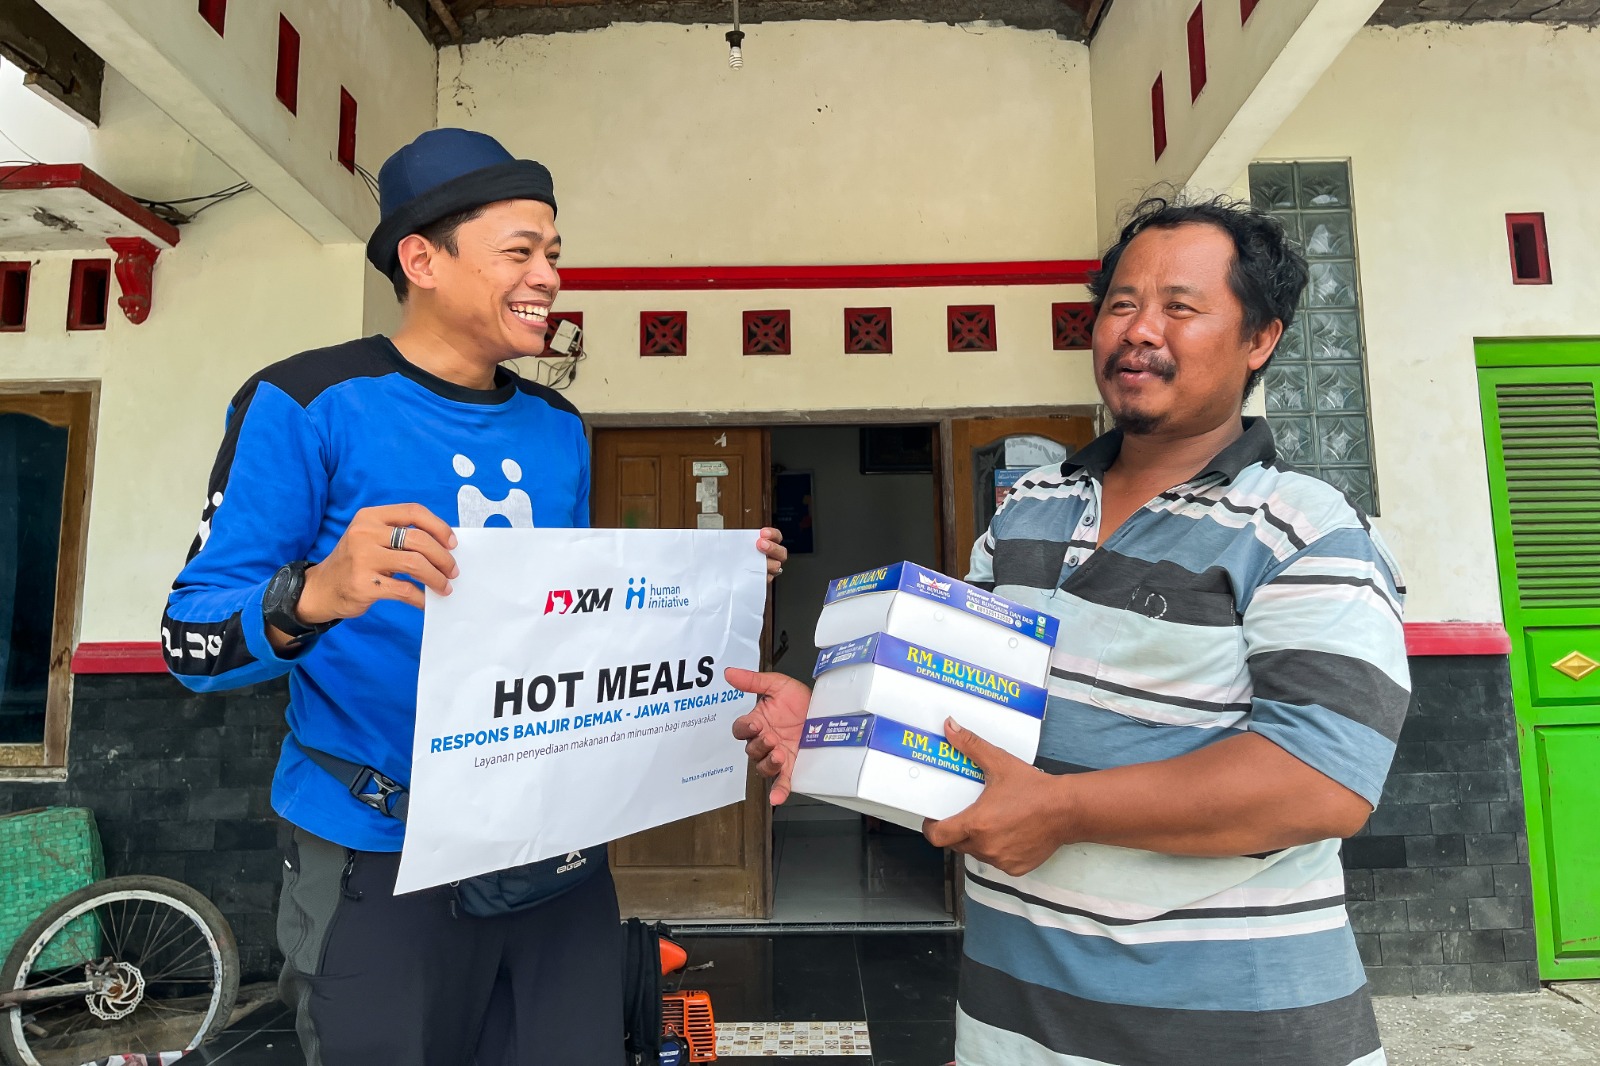 التعاون بين Human Initiative و XM Indonesia في توزيع المساعدات من خلال برنامج “مخزن المياه” للاجئي فيضانات ديماك